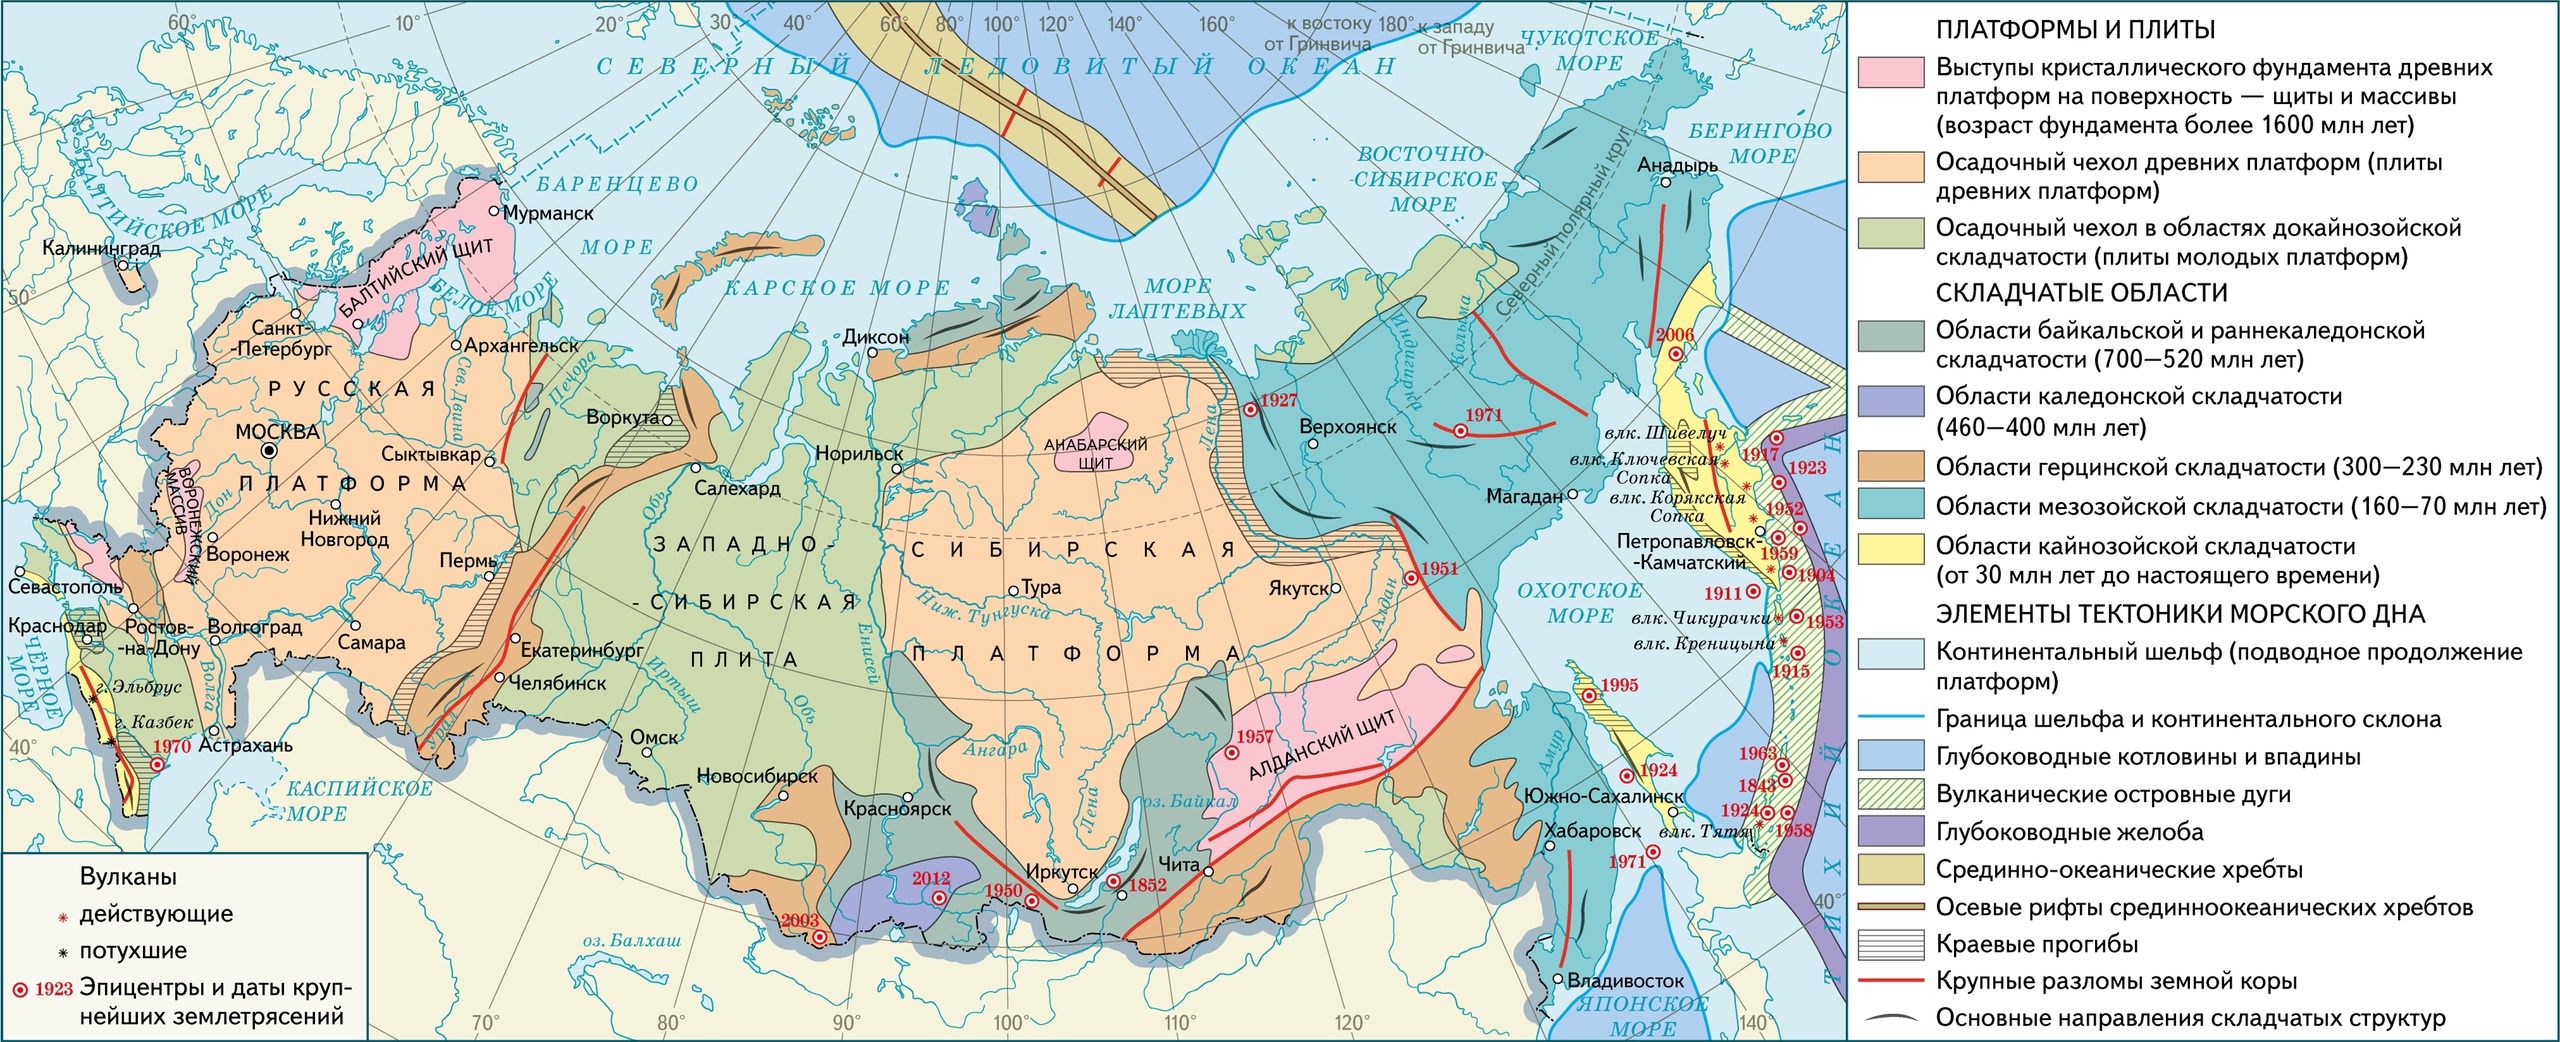 Тектоническое строение территории России, карта 2022